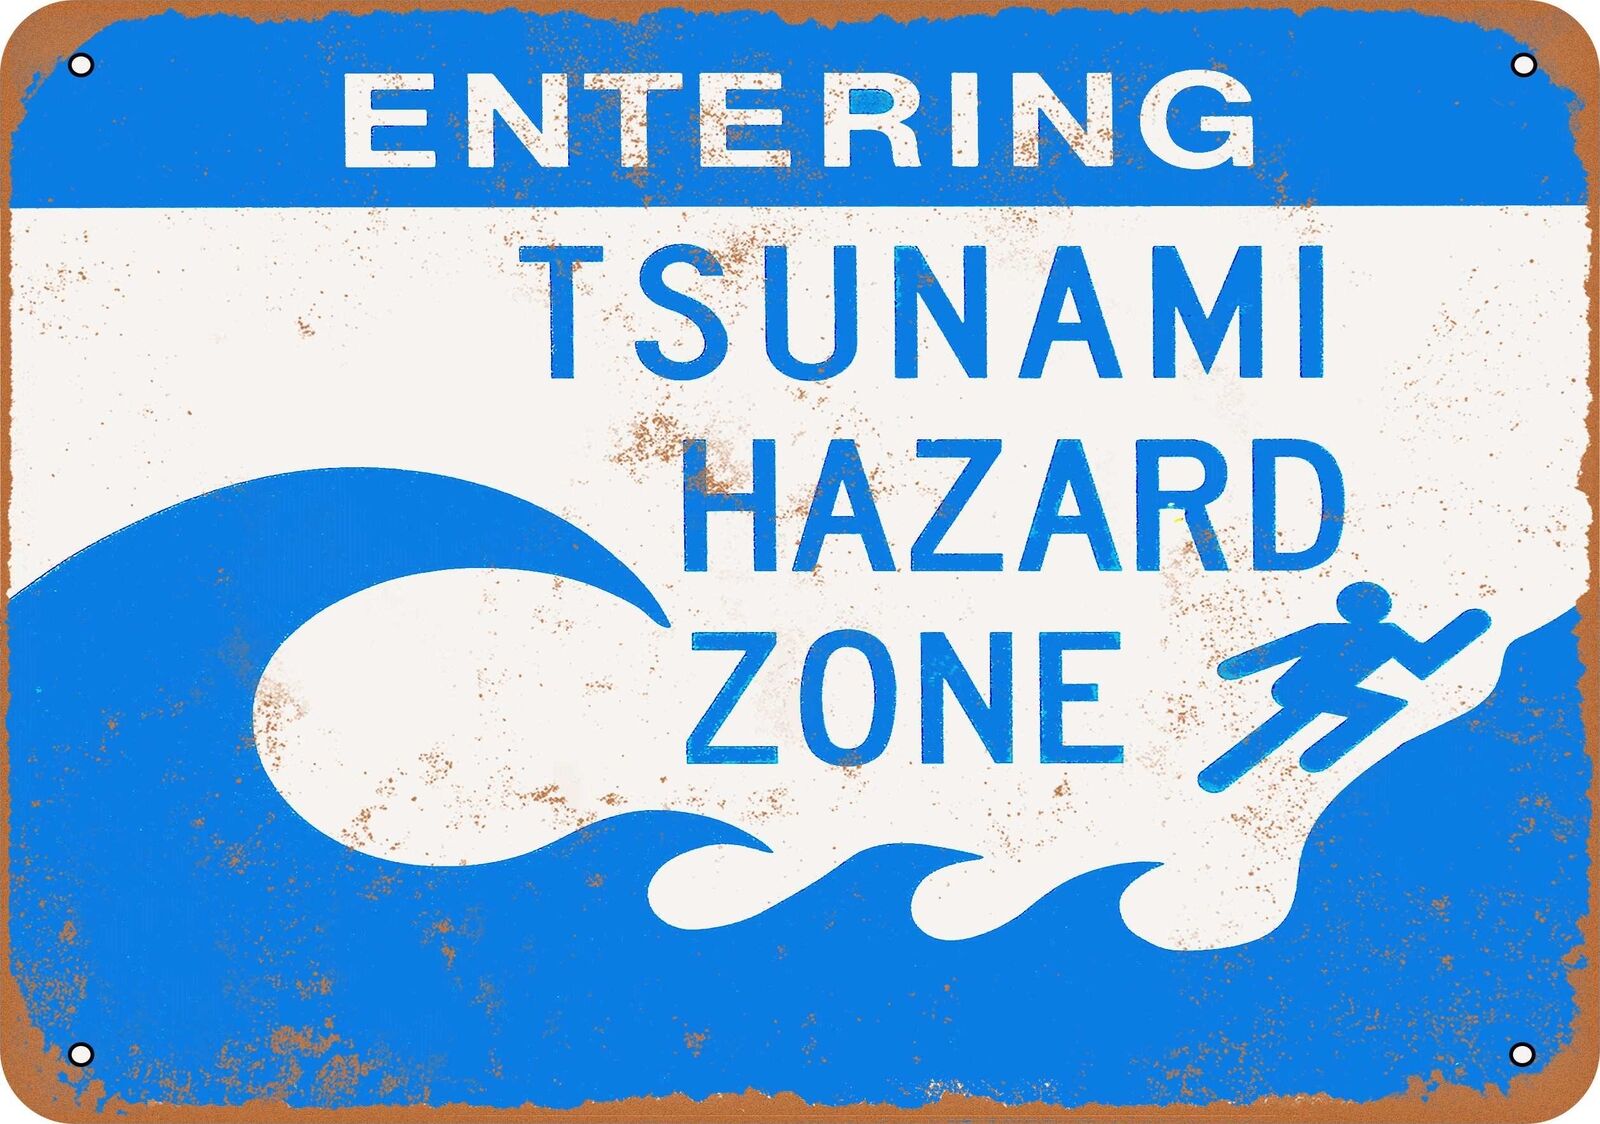 Metal Sign - Entering Tsunami Hazard Zone - Vintage Look Reproduction